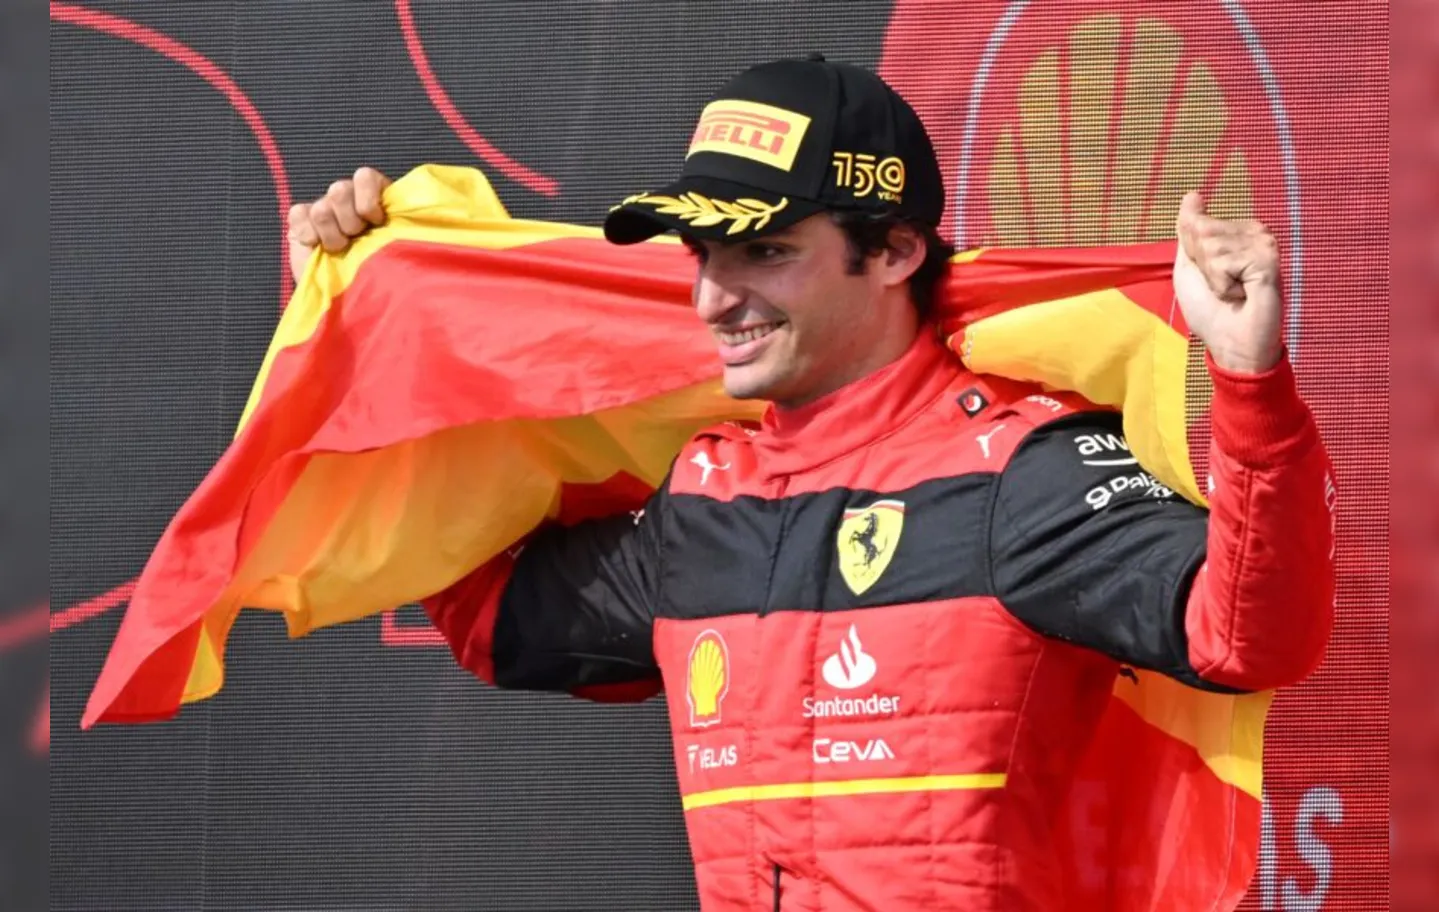 Espanhol também garantiu, no mesmo fim de semana, a primeira pole position